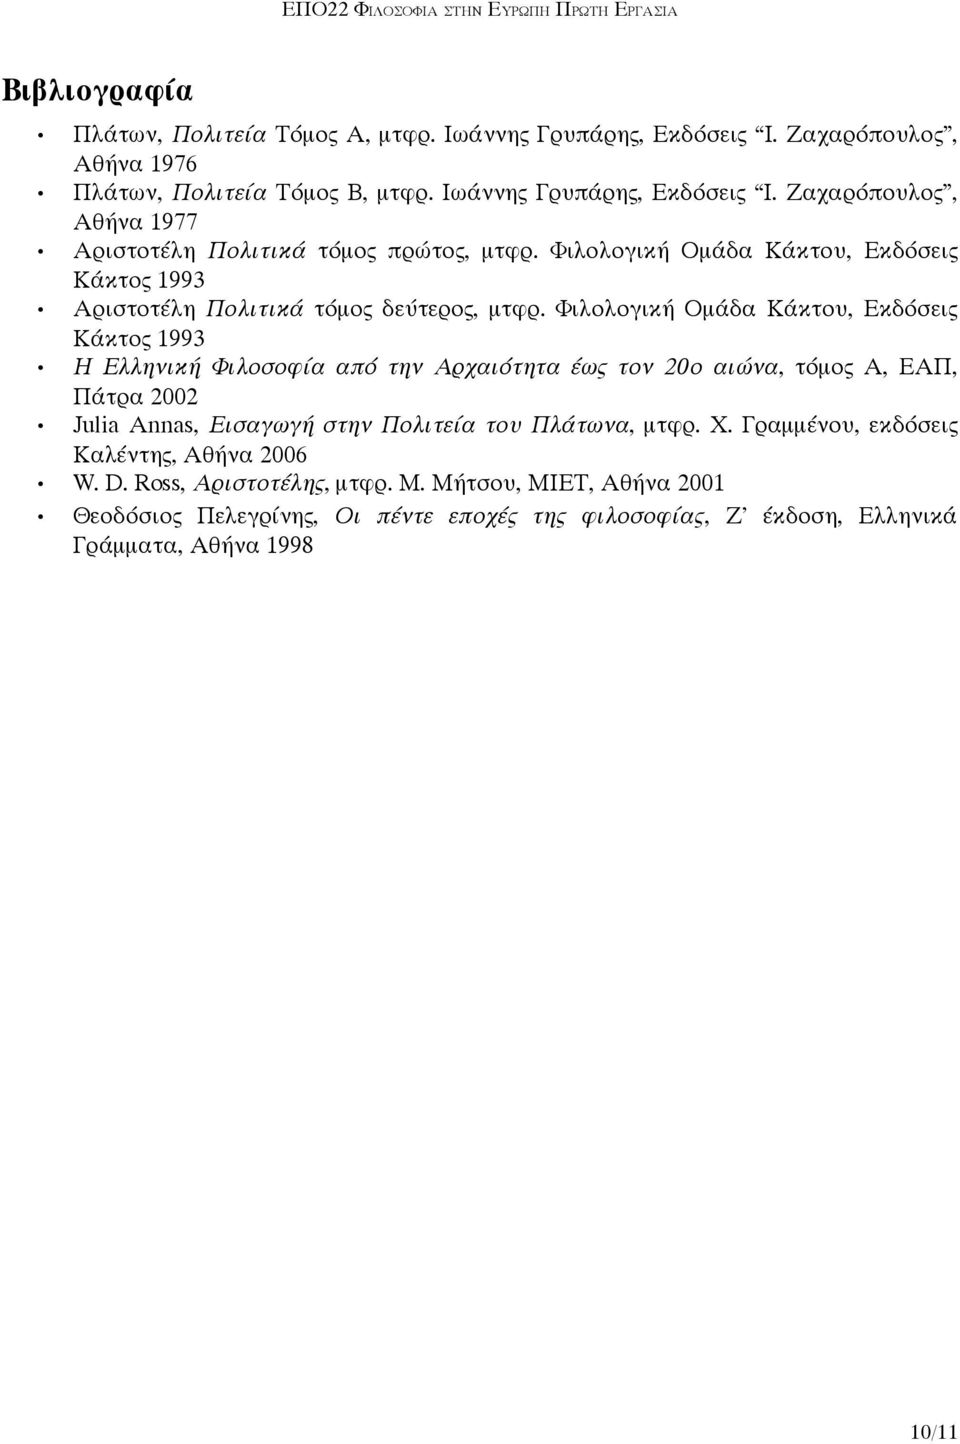 Φιλολογική Ομάδα Κάκτου, Εκδόσεις Κάκτος 1993 Η Ελληνική Φιλοσοφία από την Αρχαιότητα έως τον 20ο αιώνα, τόμος Α, ΕΑΠ, Πάτρα 2002 Julia Annas, Εισαγωγή στην Πολιτεία του